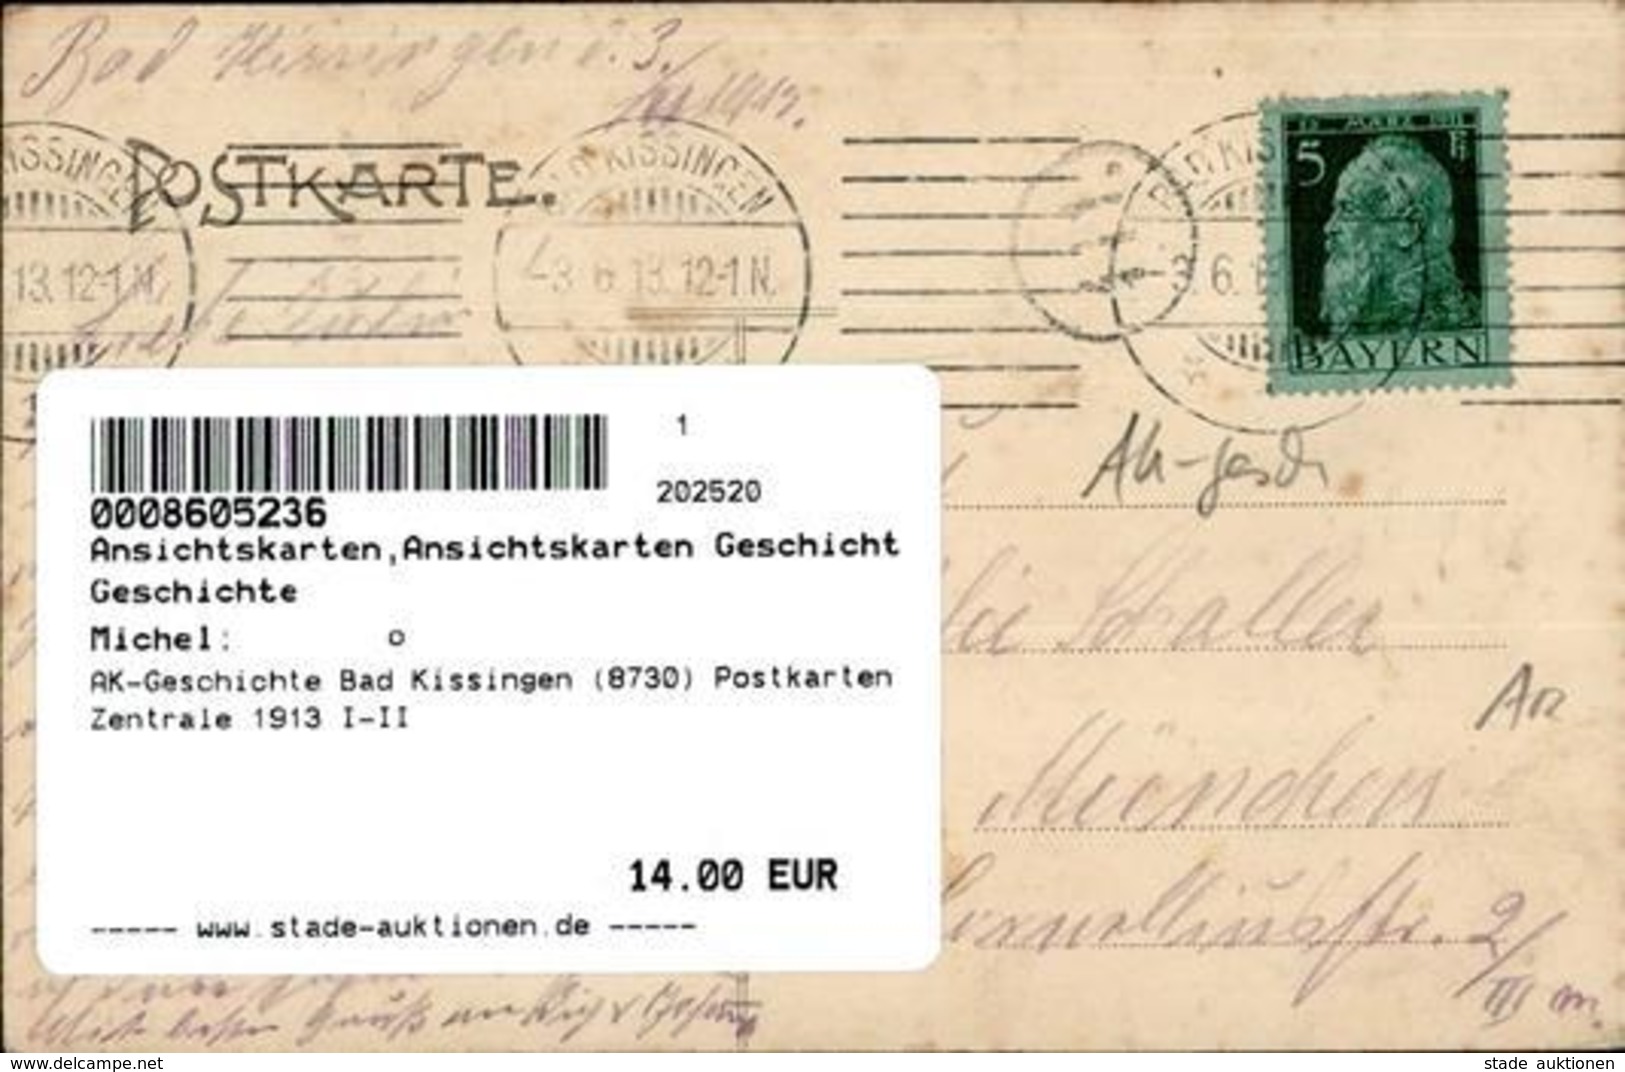 AK-Geschichte Bad Kissingen (8730) Postkarten Zentrale 1913 I-II - Histoire